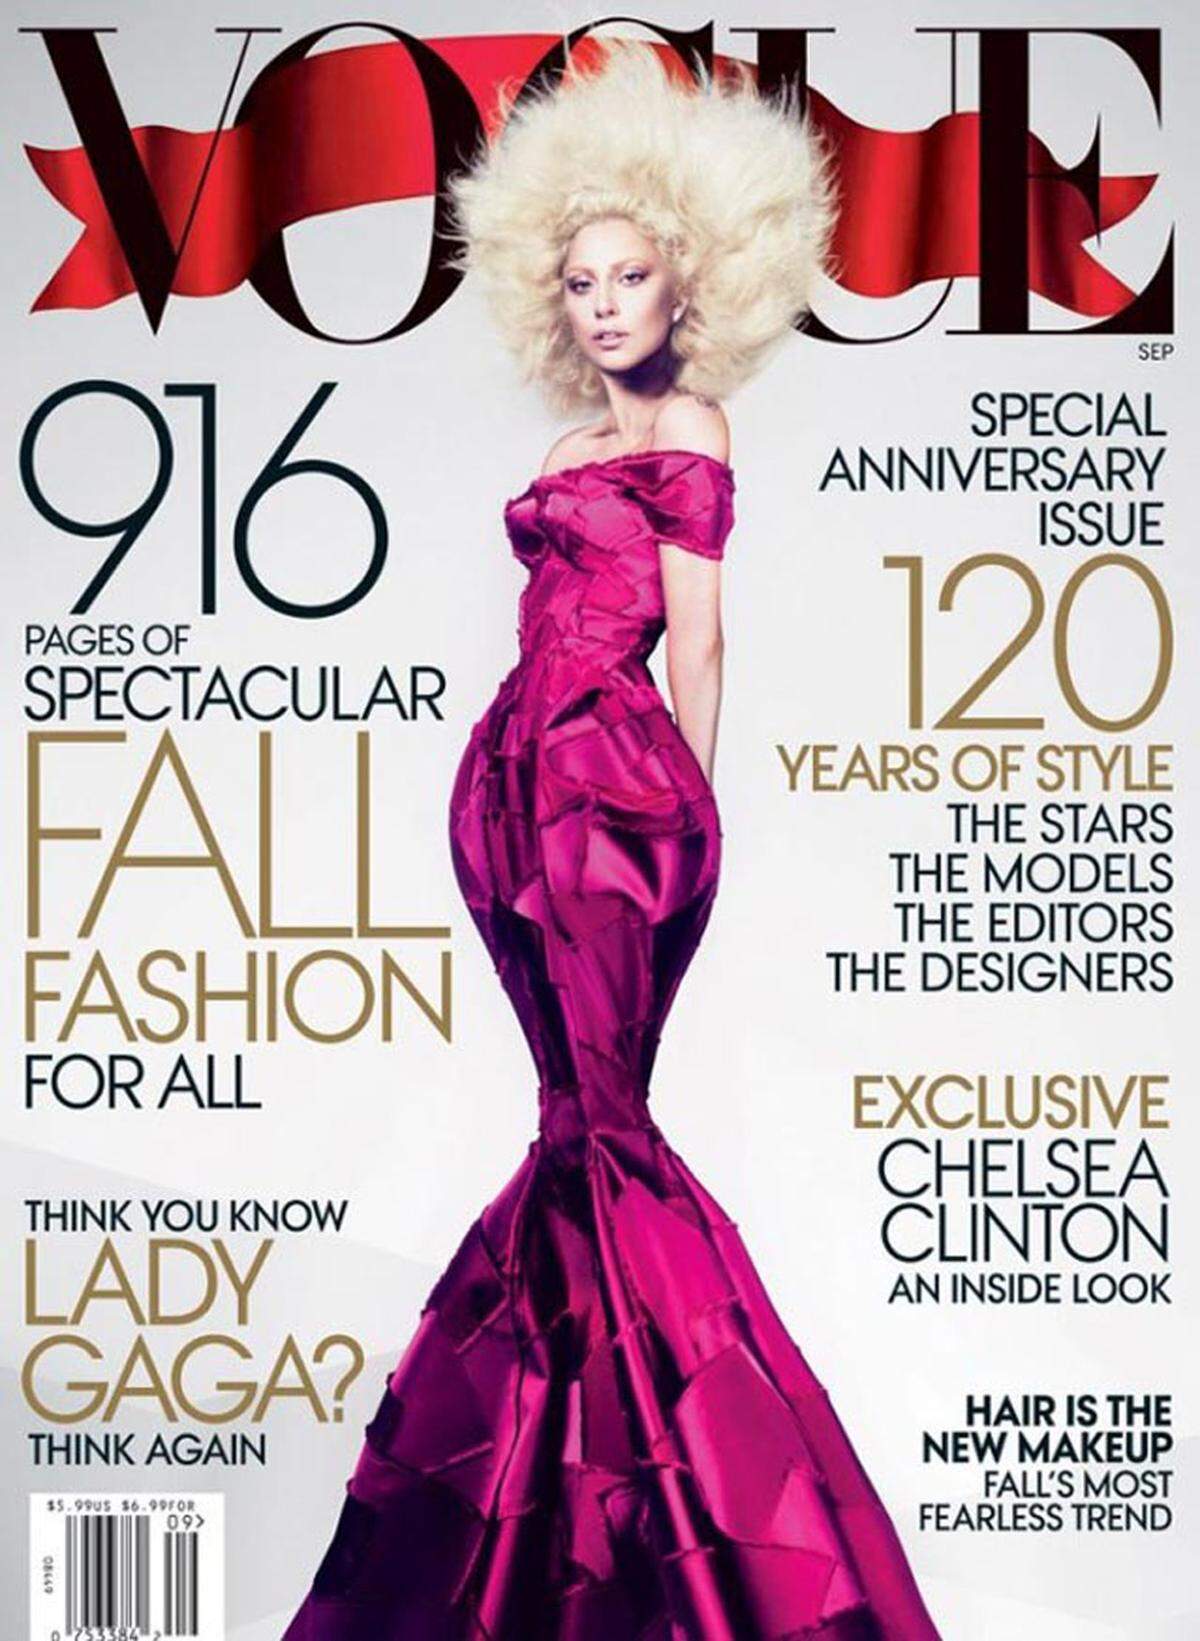 Mit einer langgezogenen und extrem dünnen Silhouette wurde Lady Gaga am Vogue-Cover abgebildet.